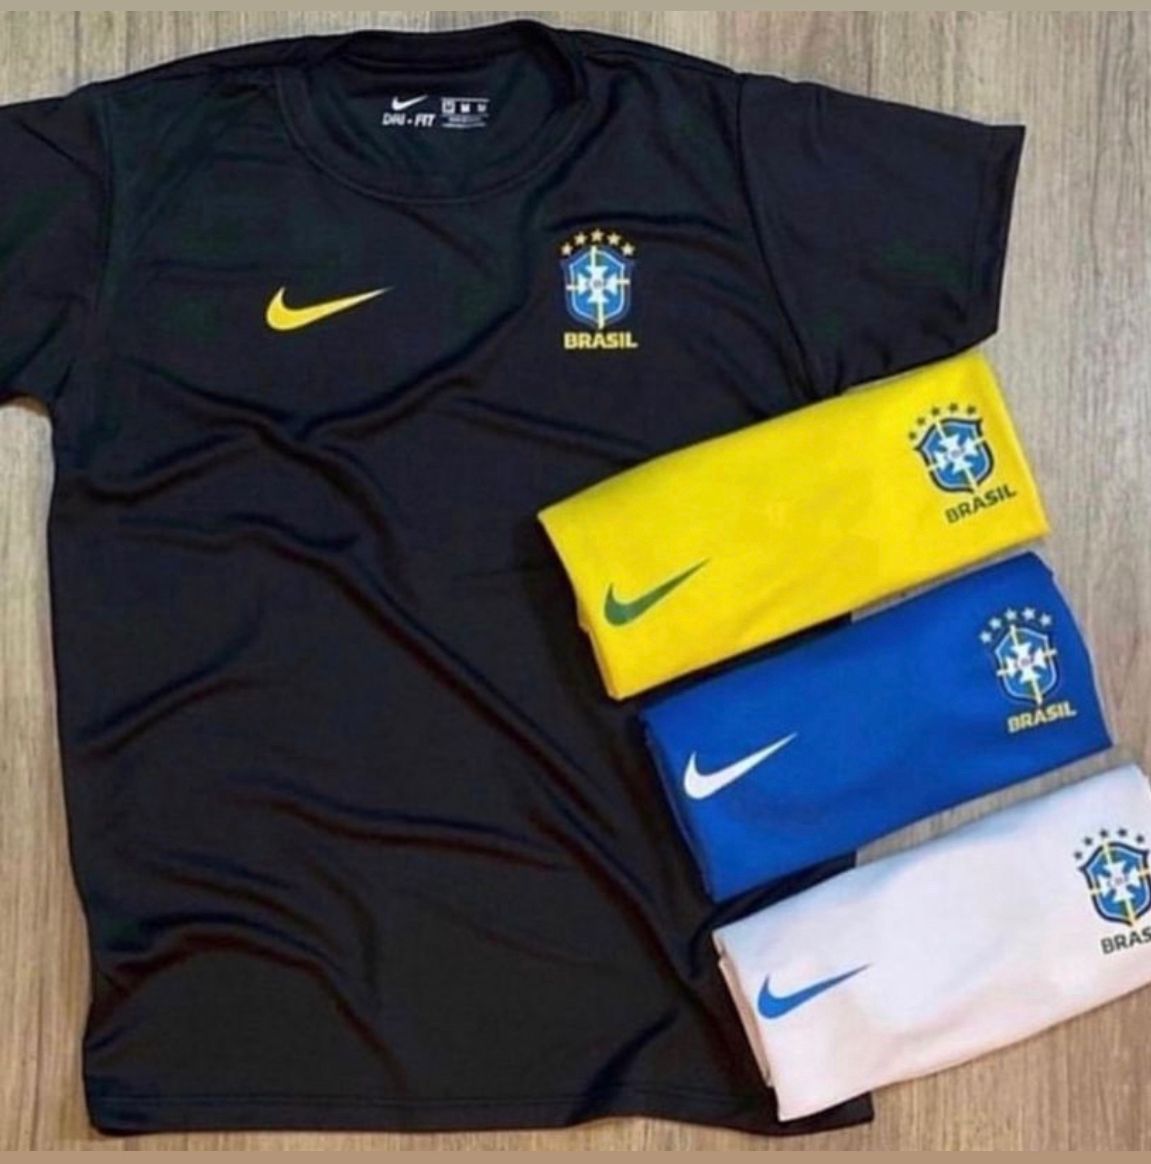 Camiseta Dry Fit Brasil - Roupas femininas, Acessórios e Calçados.